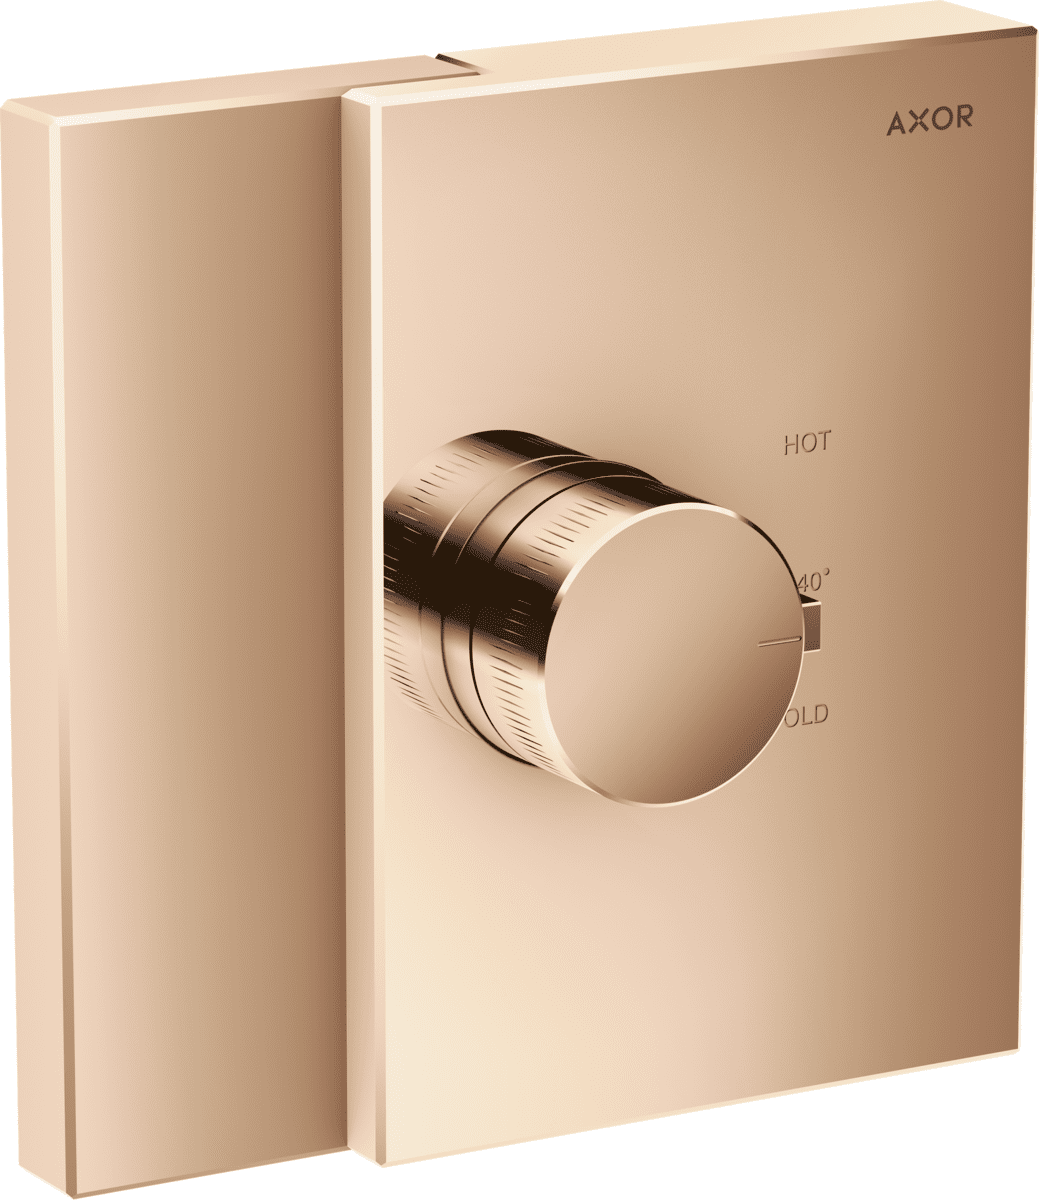 εικόνα του HANSGROHE AXOR Edge Thermostat HighFlow for concealed installation #46740300 - Polished Red Gold